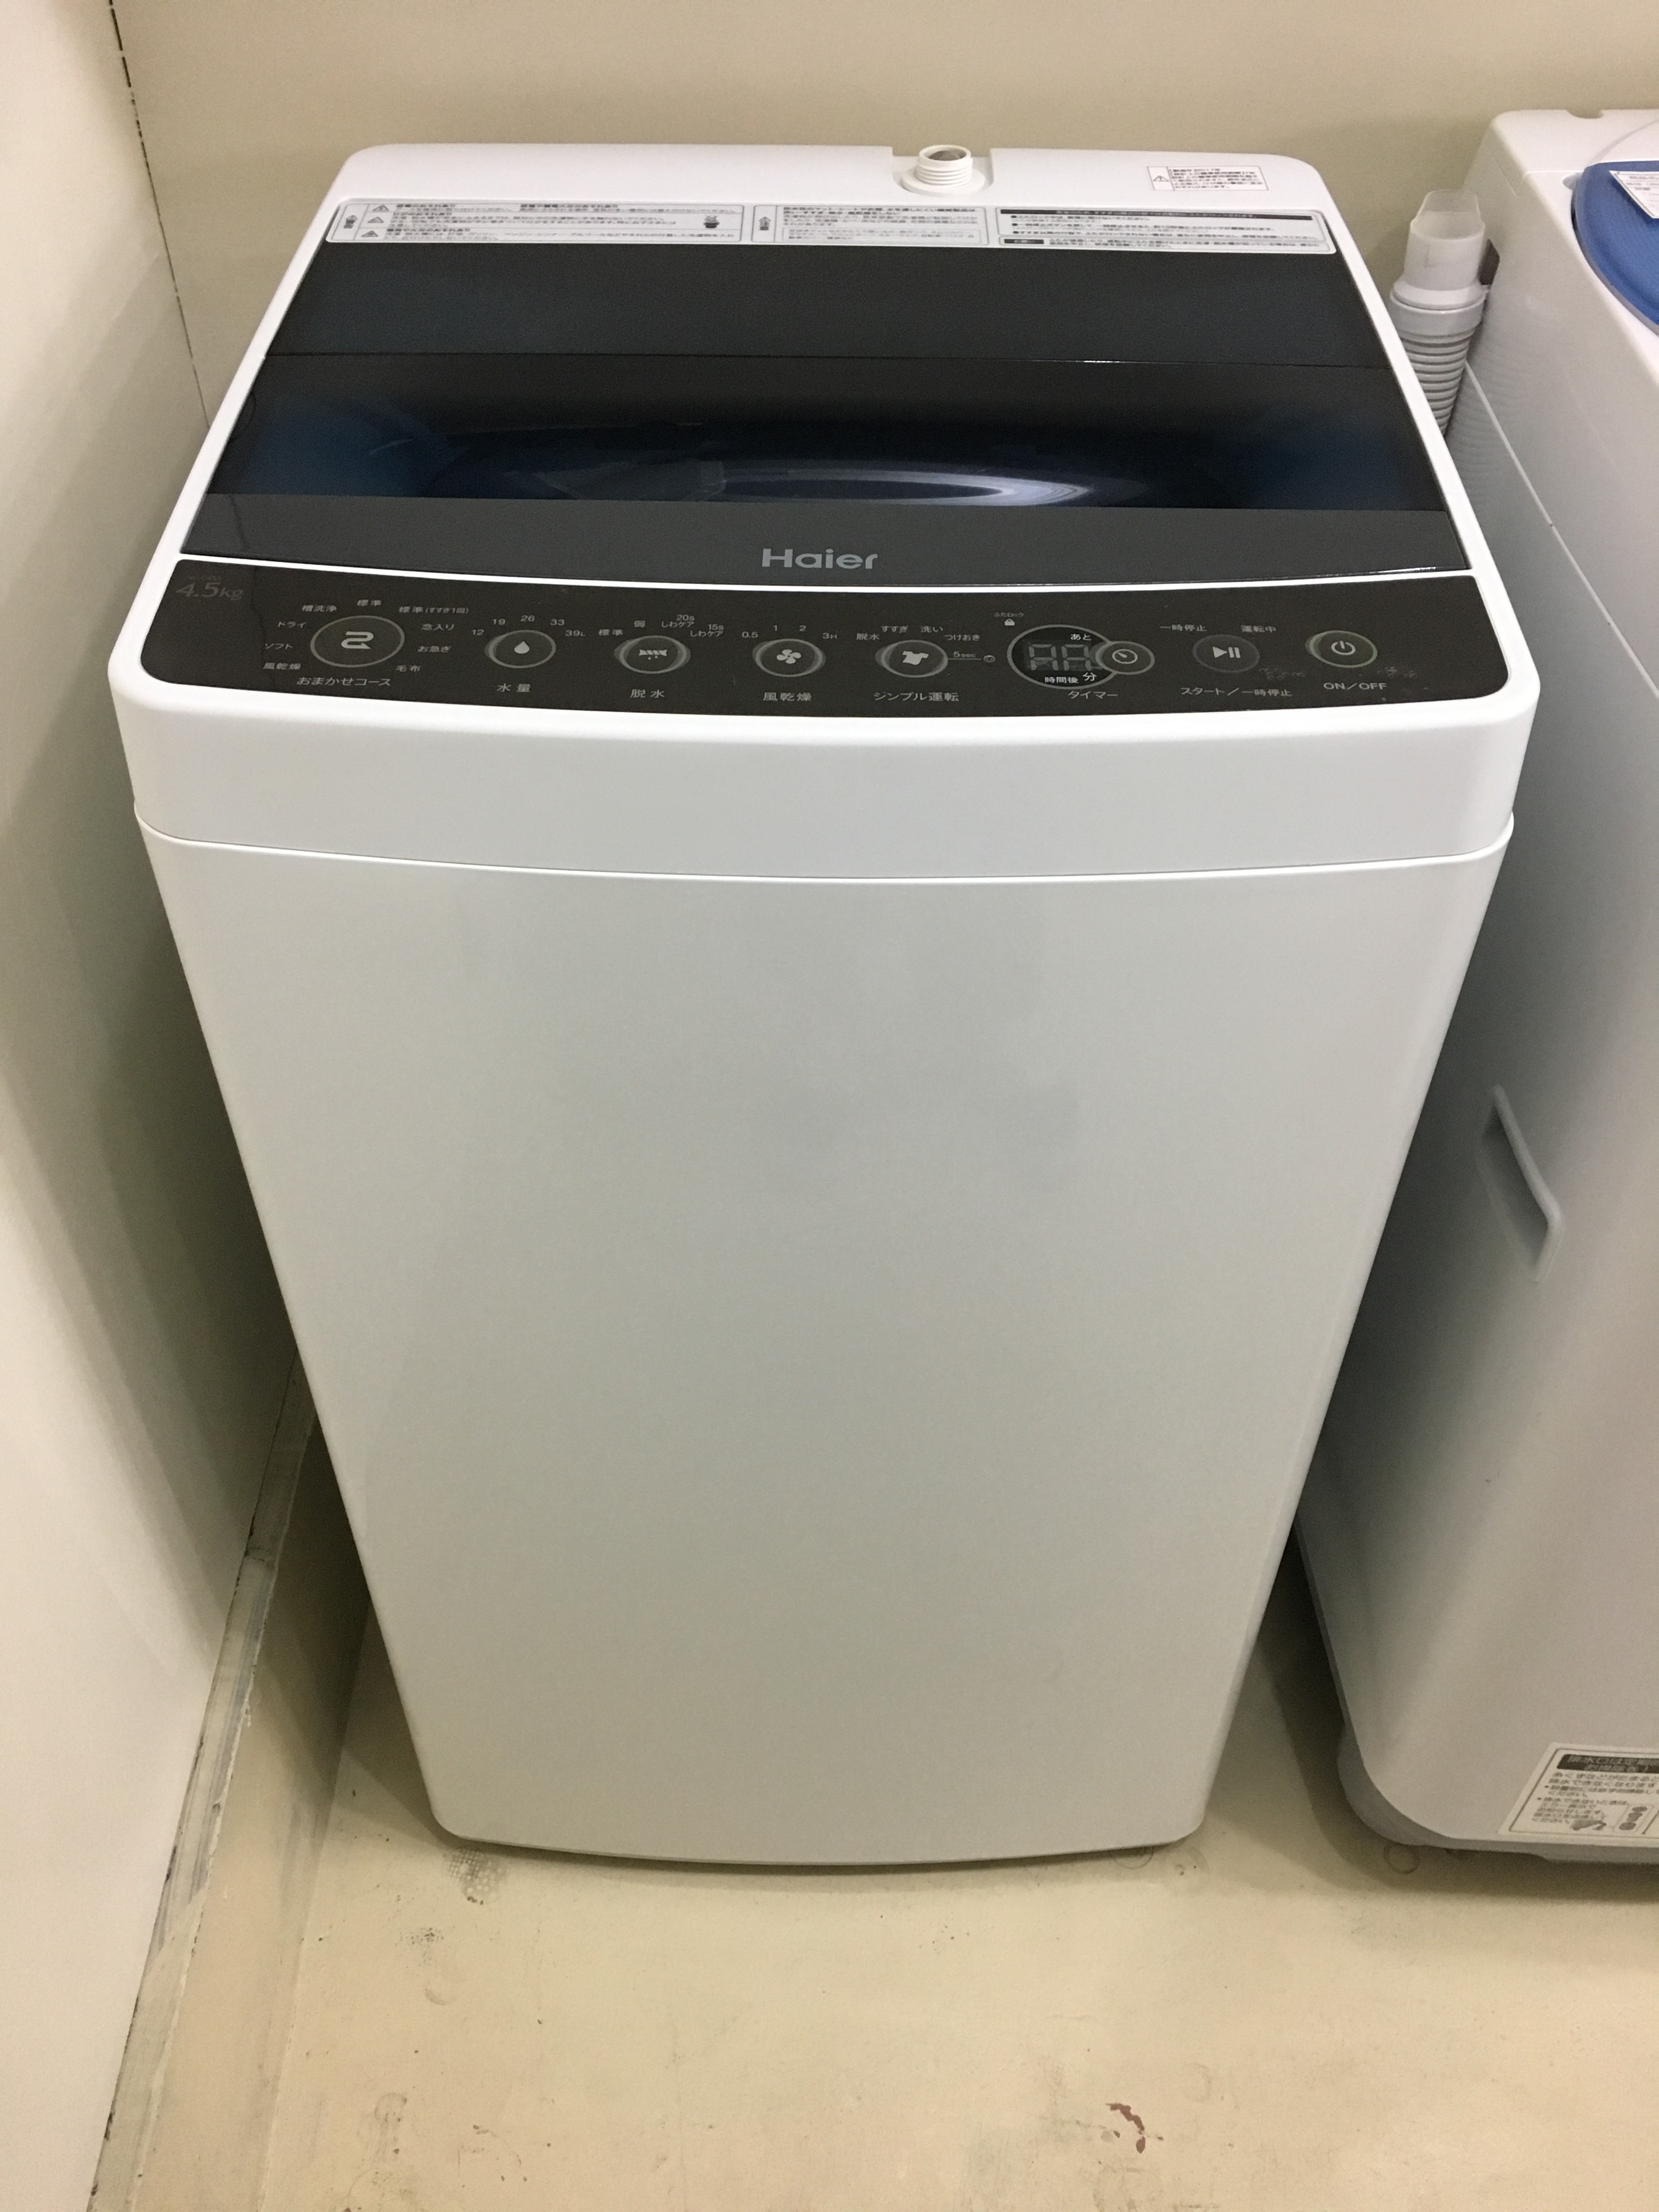 洗濯機 ハイアール Haier Jw C45a 17年製 4 5kg 宇都宮のリサイクルショップ オトワリバース